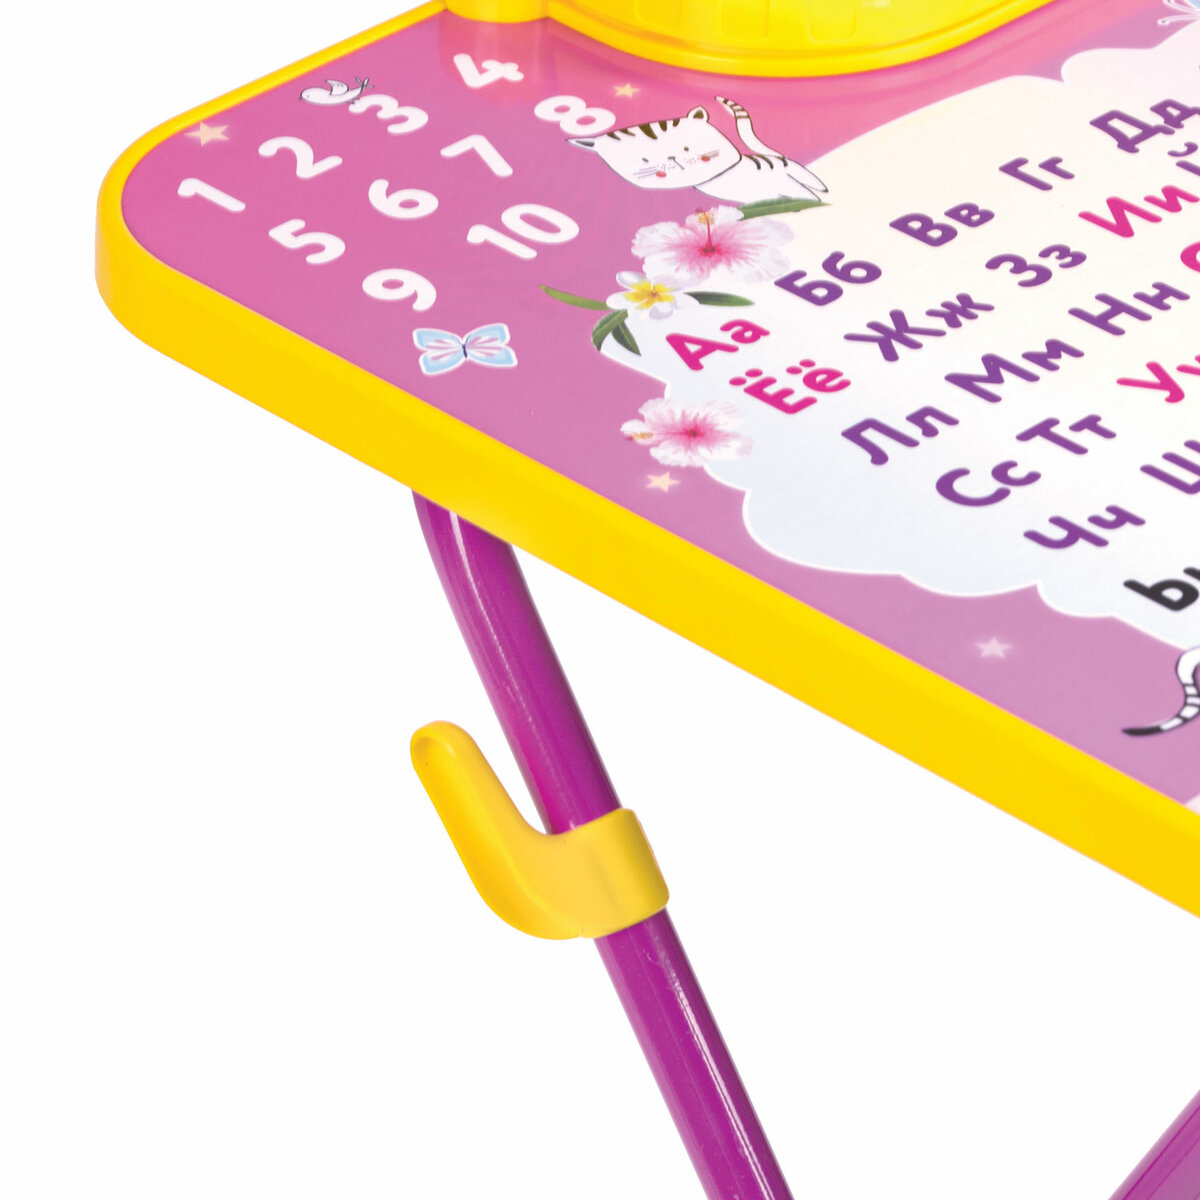 Столик и стульчик детский Brauberg игровой набор для развивающих игр для девочки розовый Принцесса - фото 13